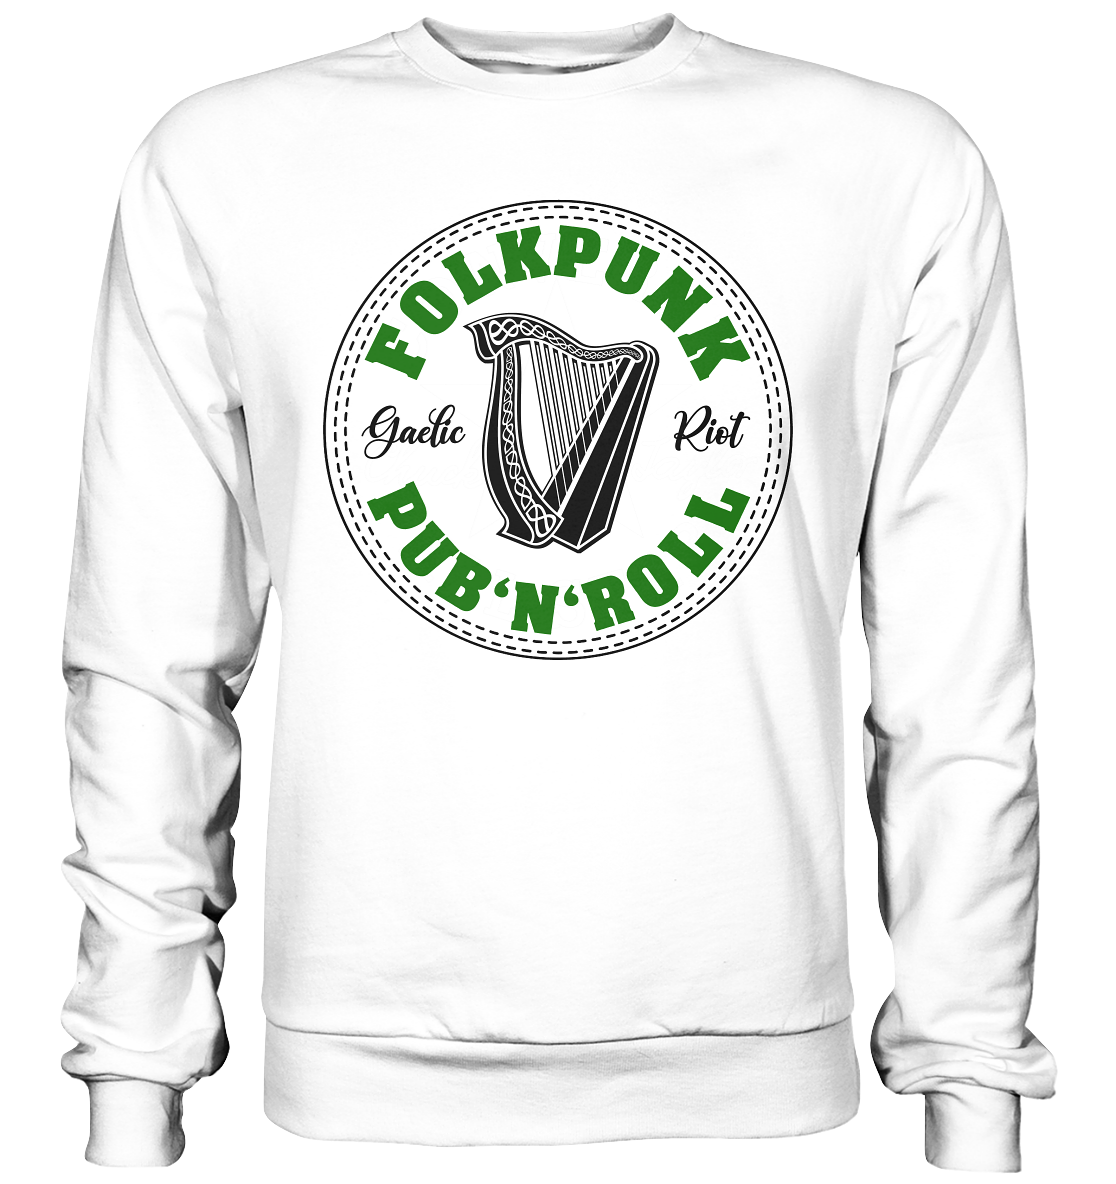 Folkpunk "Pub'n'Roll" - Basic Sweatshirt